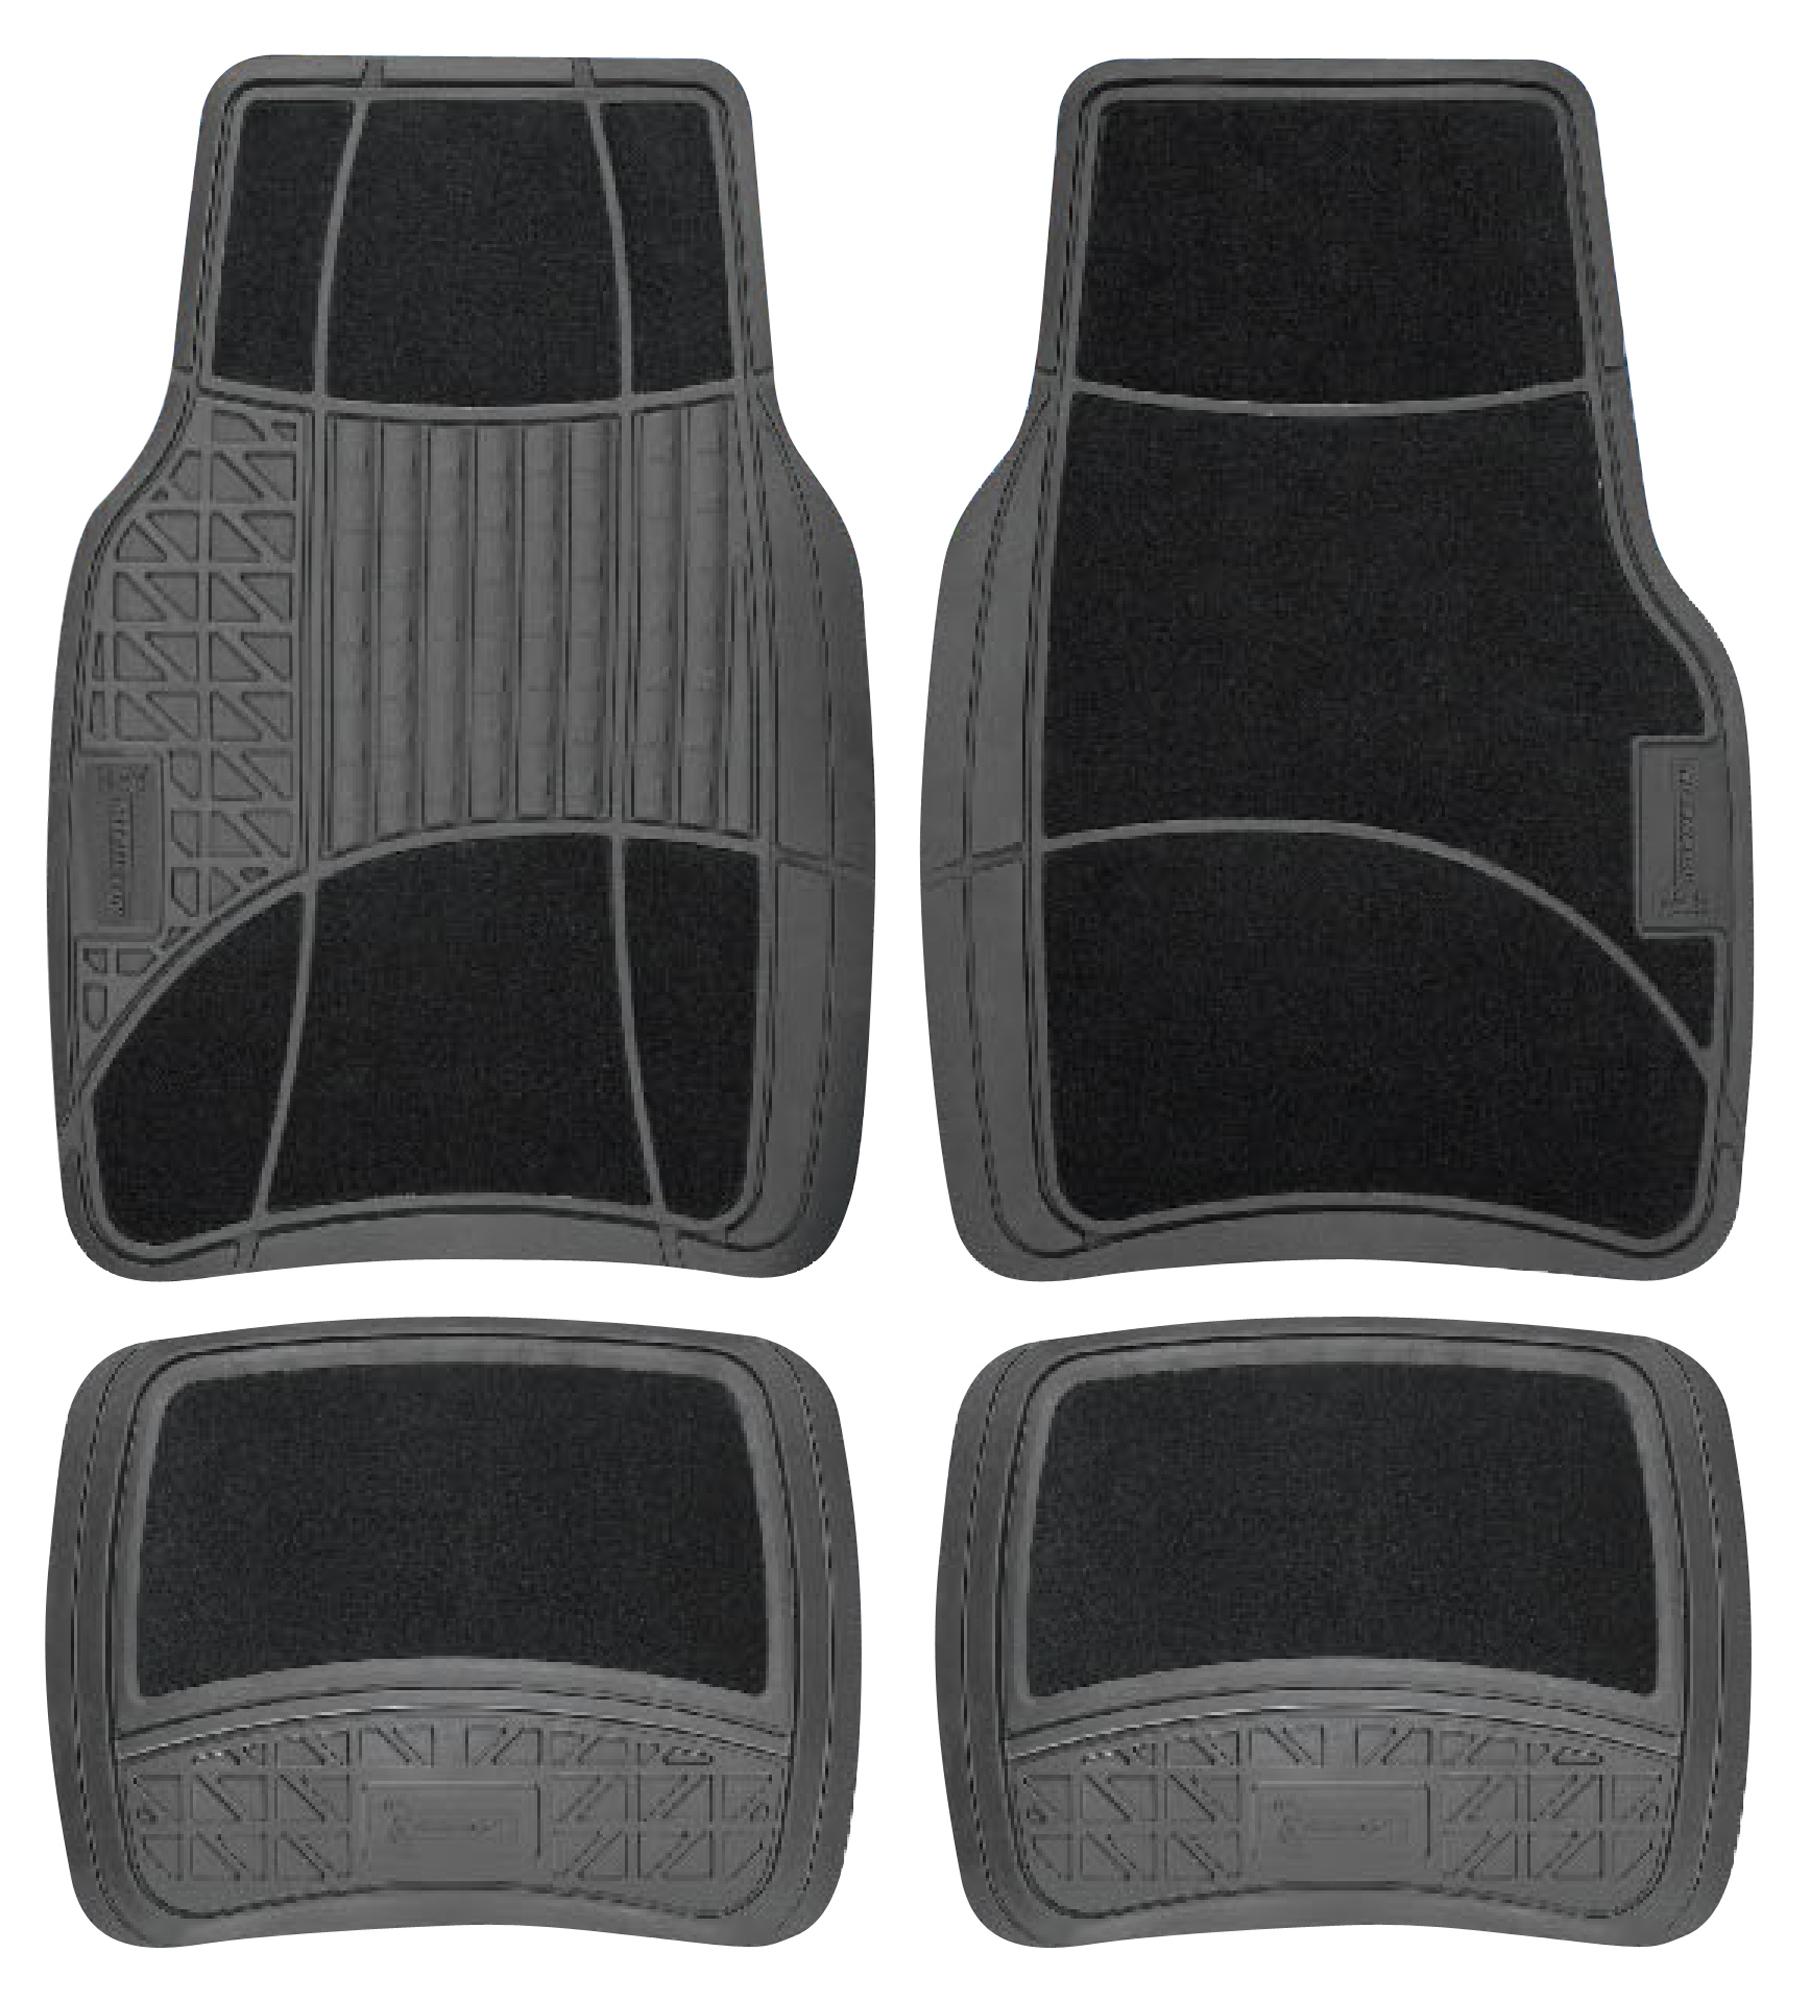 Michelin Carpet & Rubber 4 Piece Car Mat Set Black